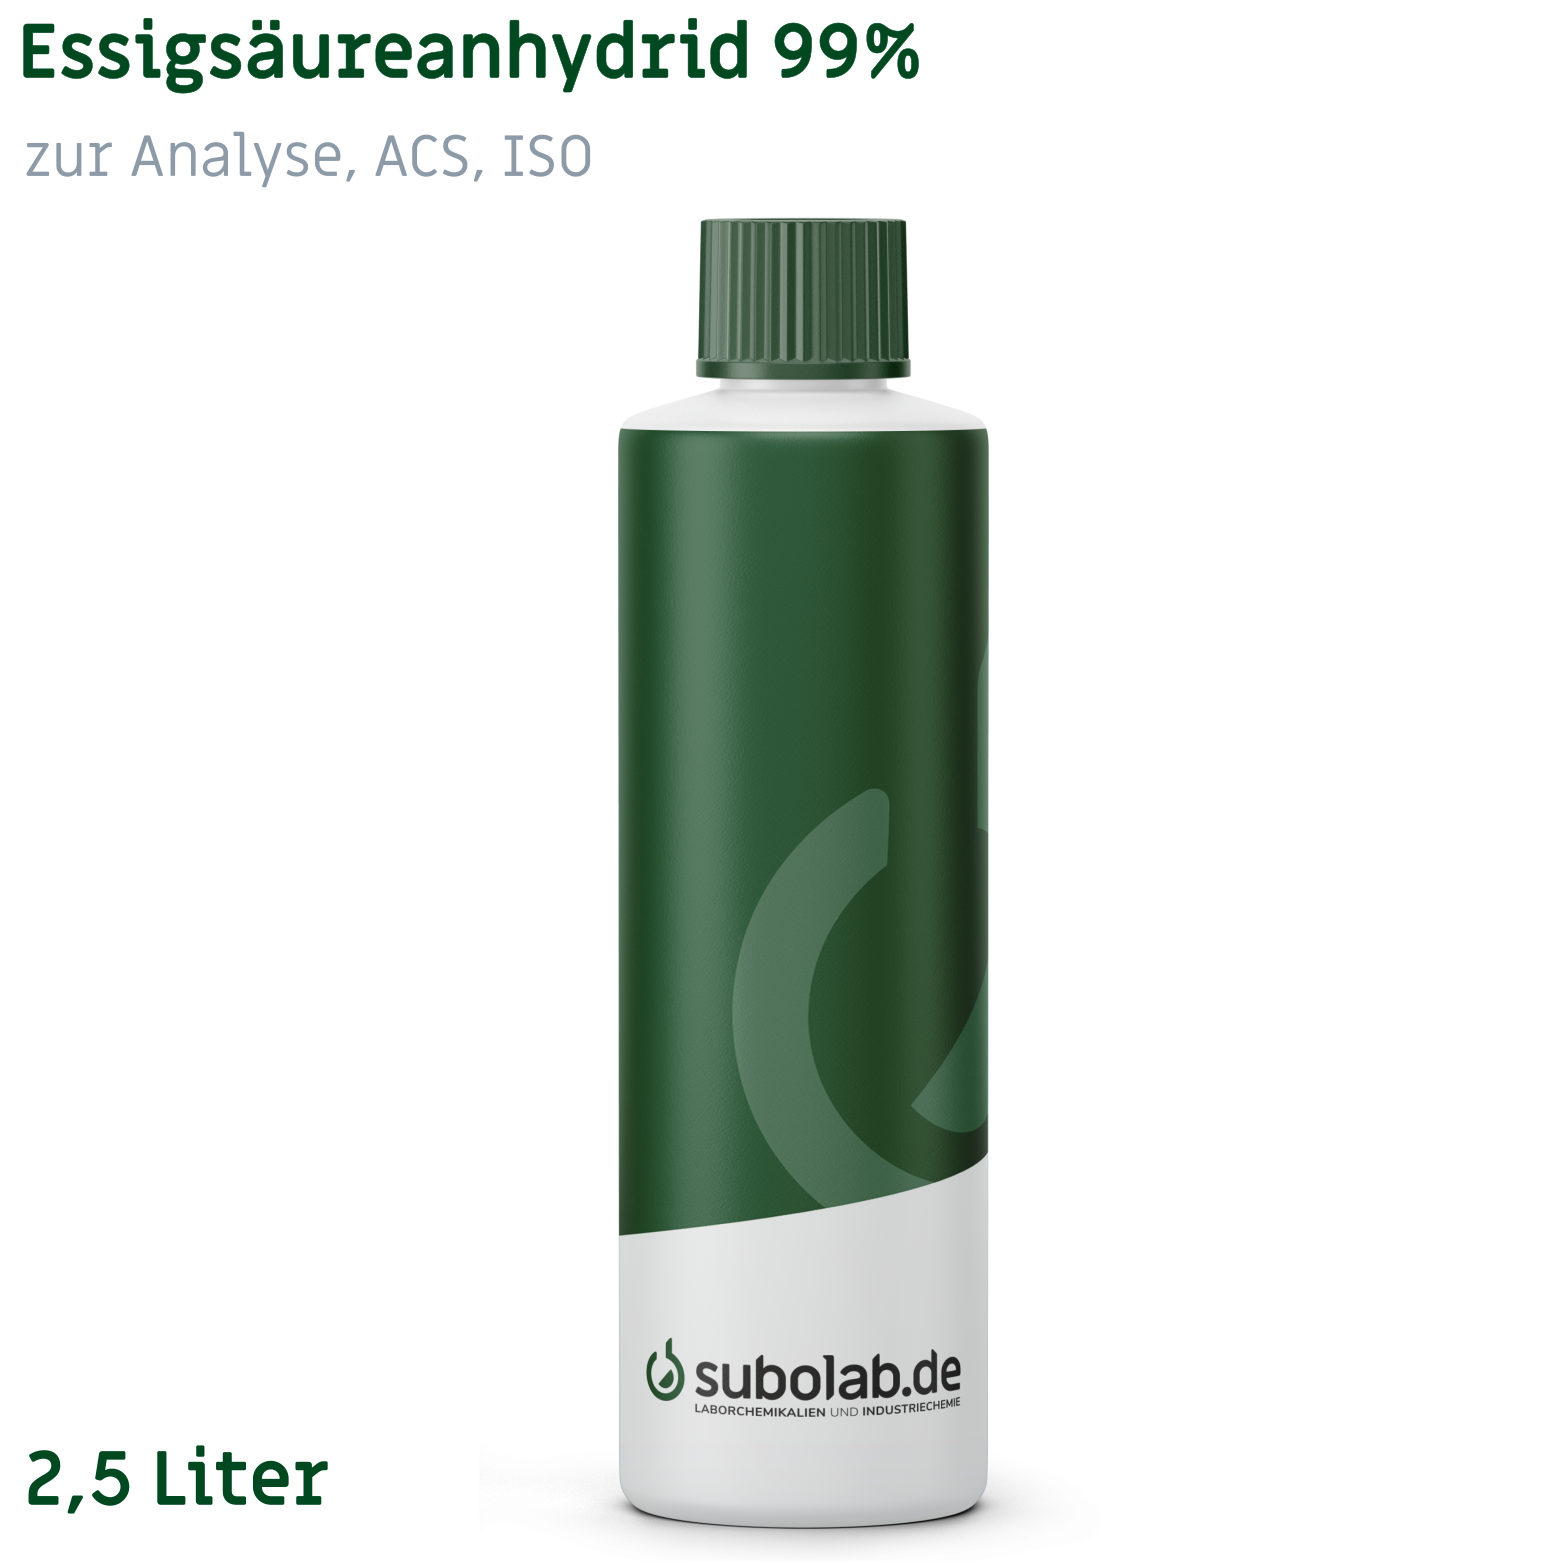 Bild von Essigsäureanhydrid 99% zur Analyse, ACS, ISO (2,5 Liter)